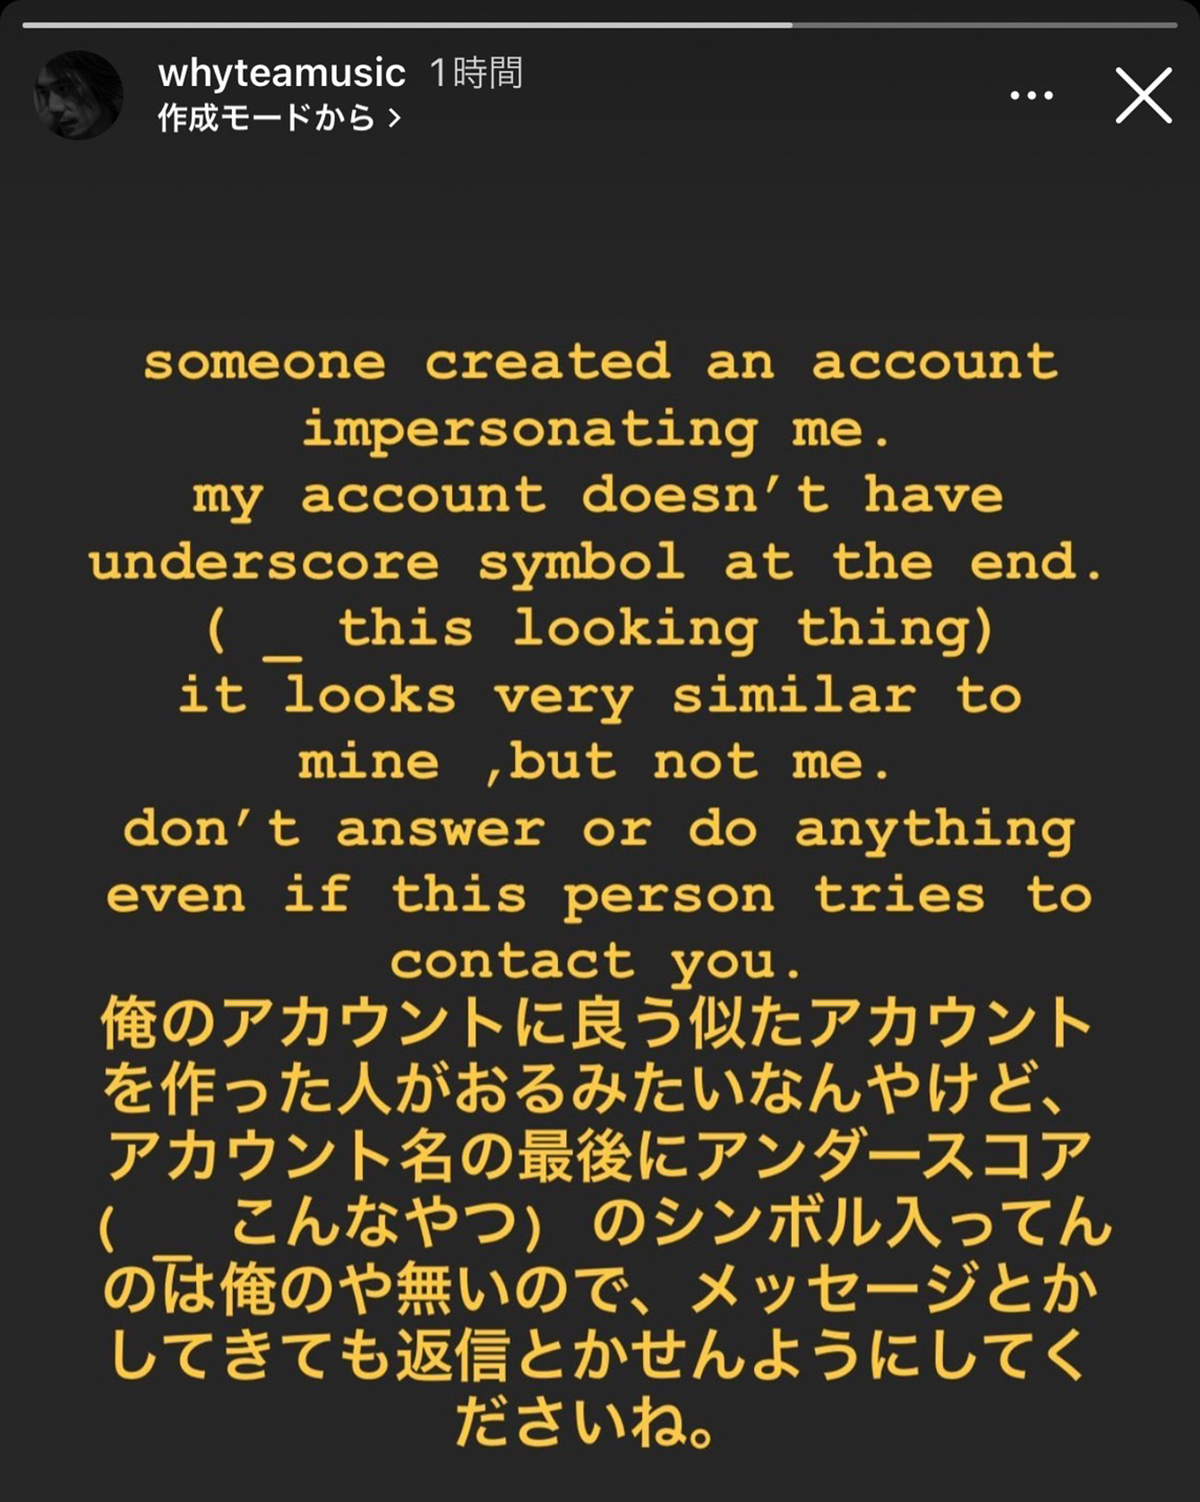 Yukihide "YT" Takiyamaがよく似たInstagramアカウントについて注意喚起するストーリーズ投稿の画像